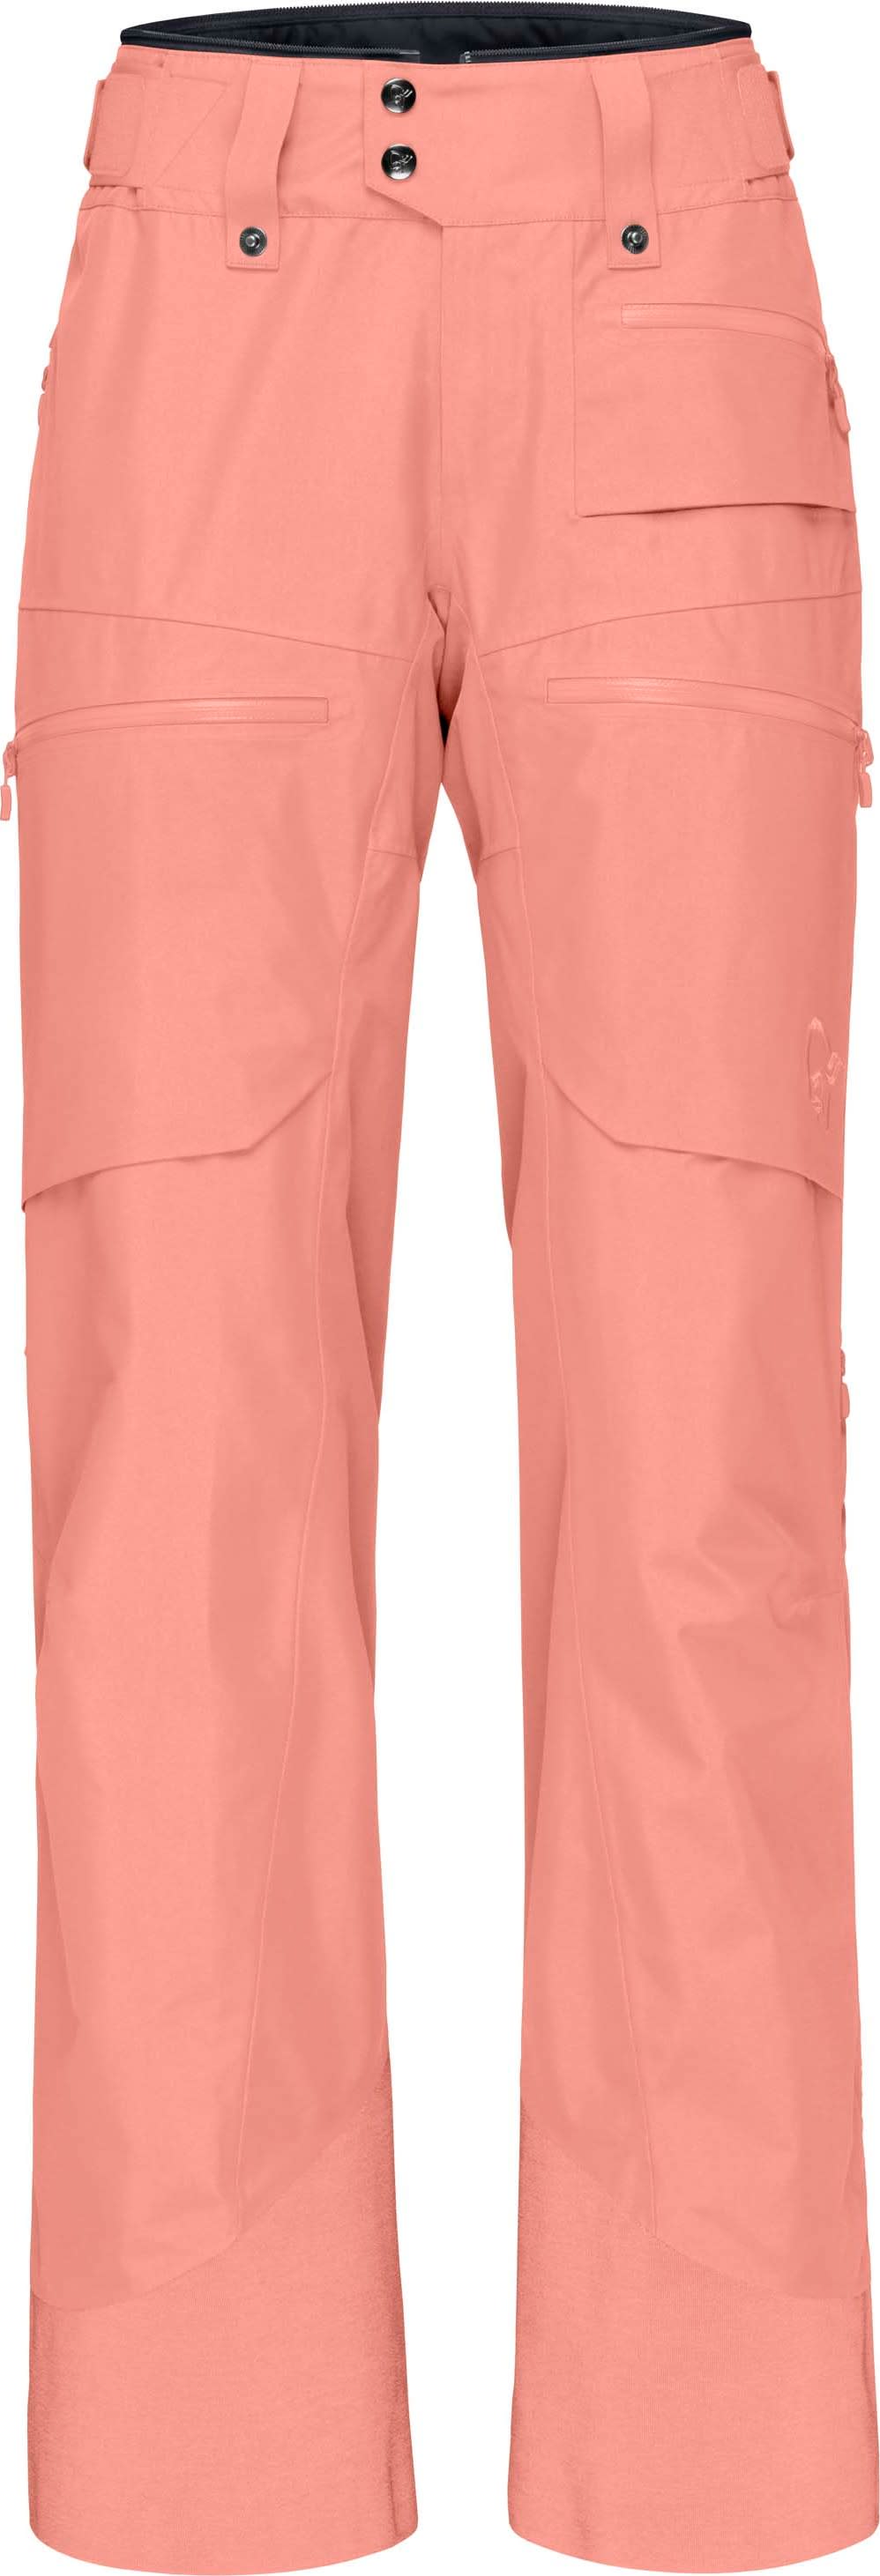 Women's Lofoten GORE-TEX Insulated Pants Peach Amber